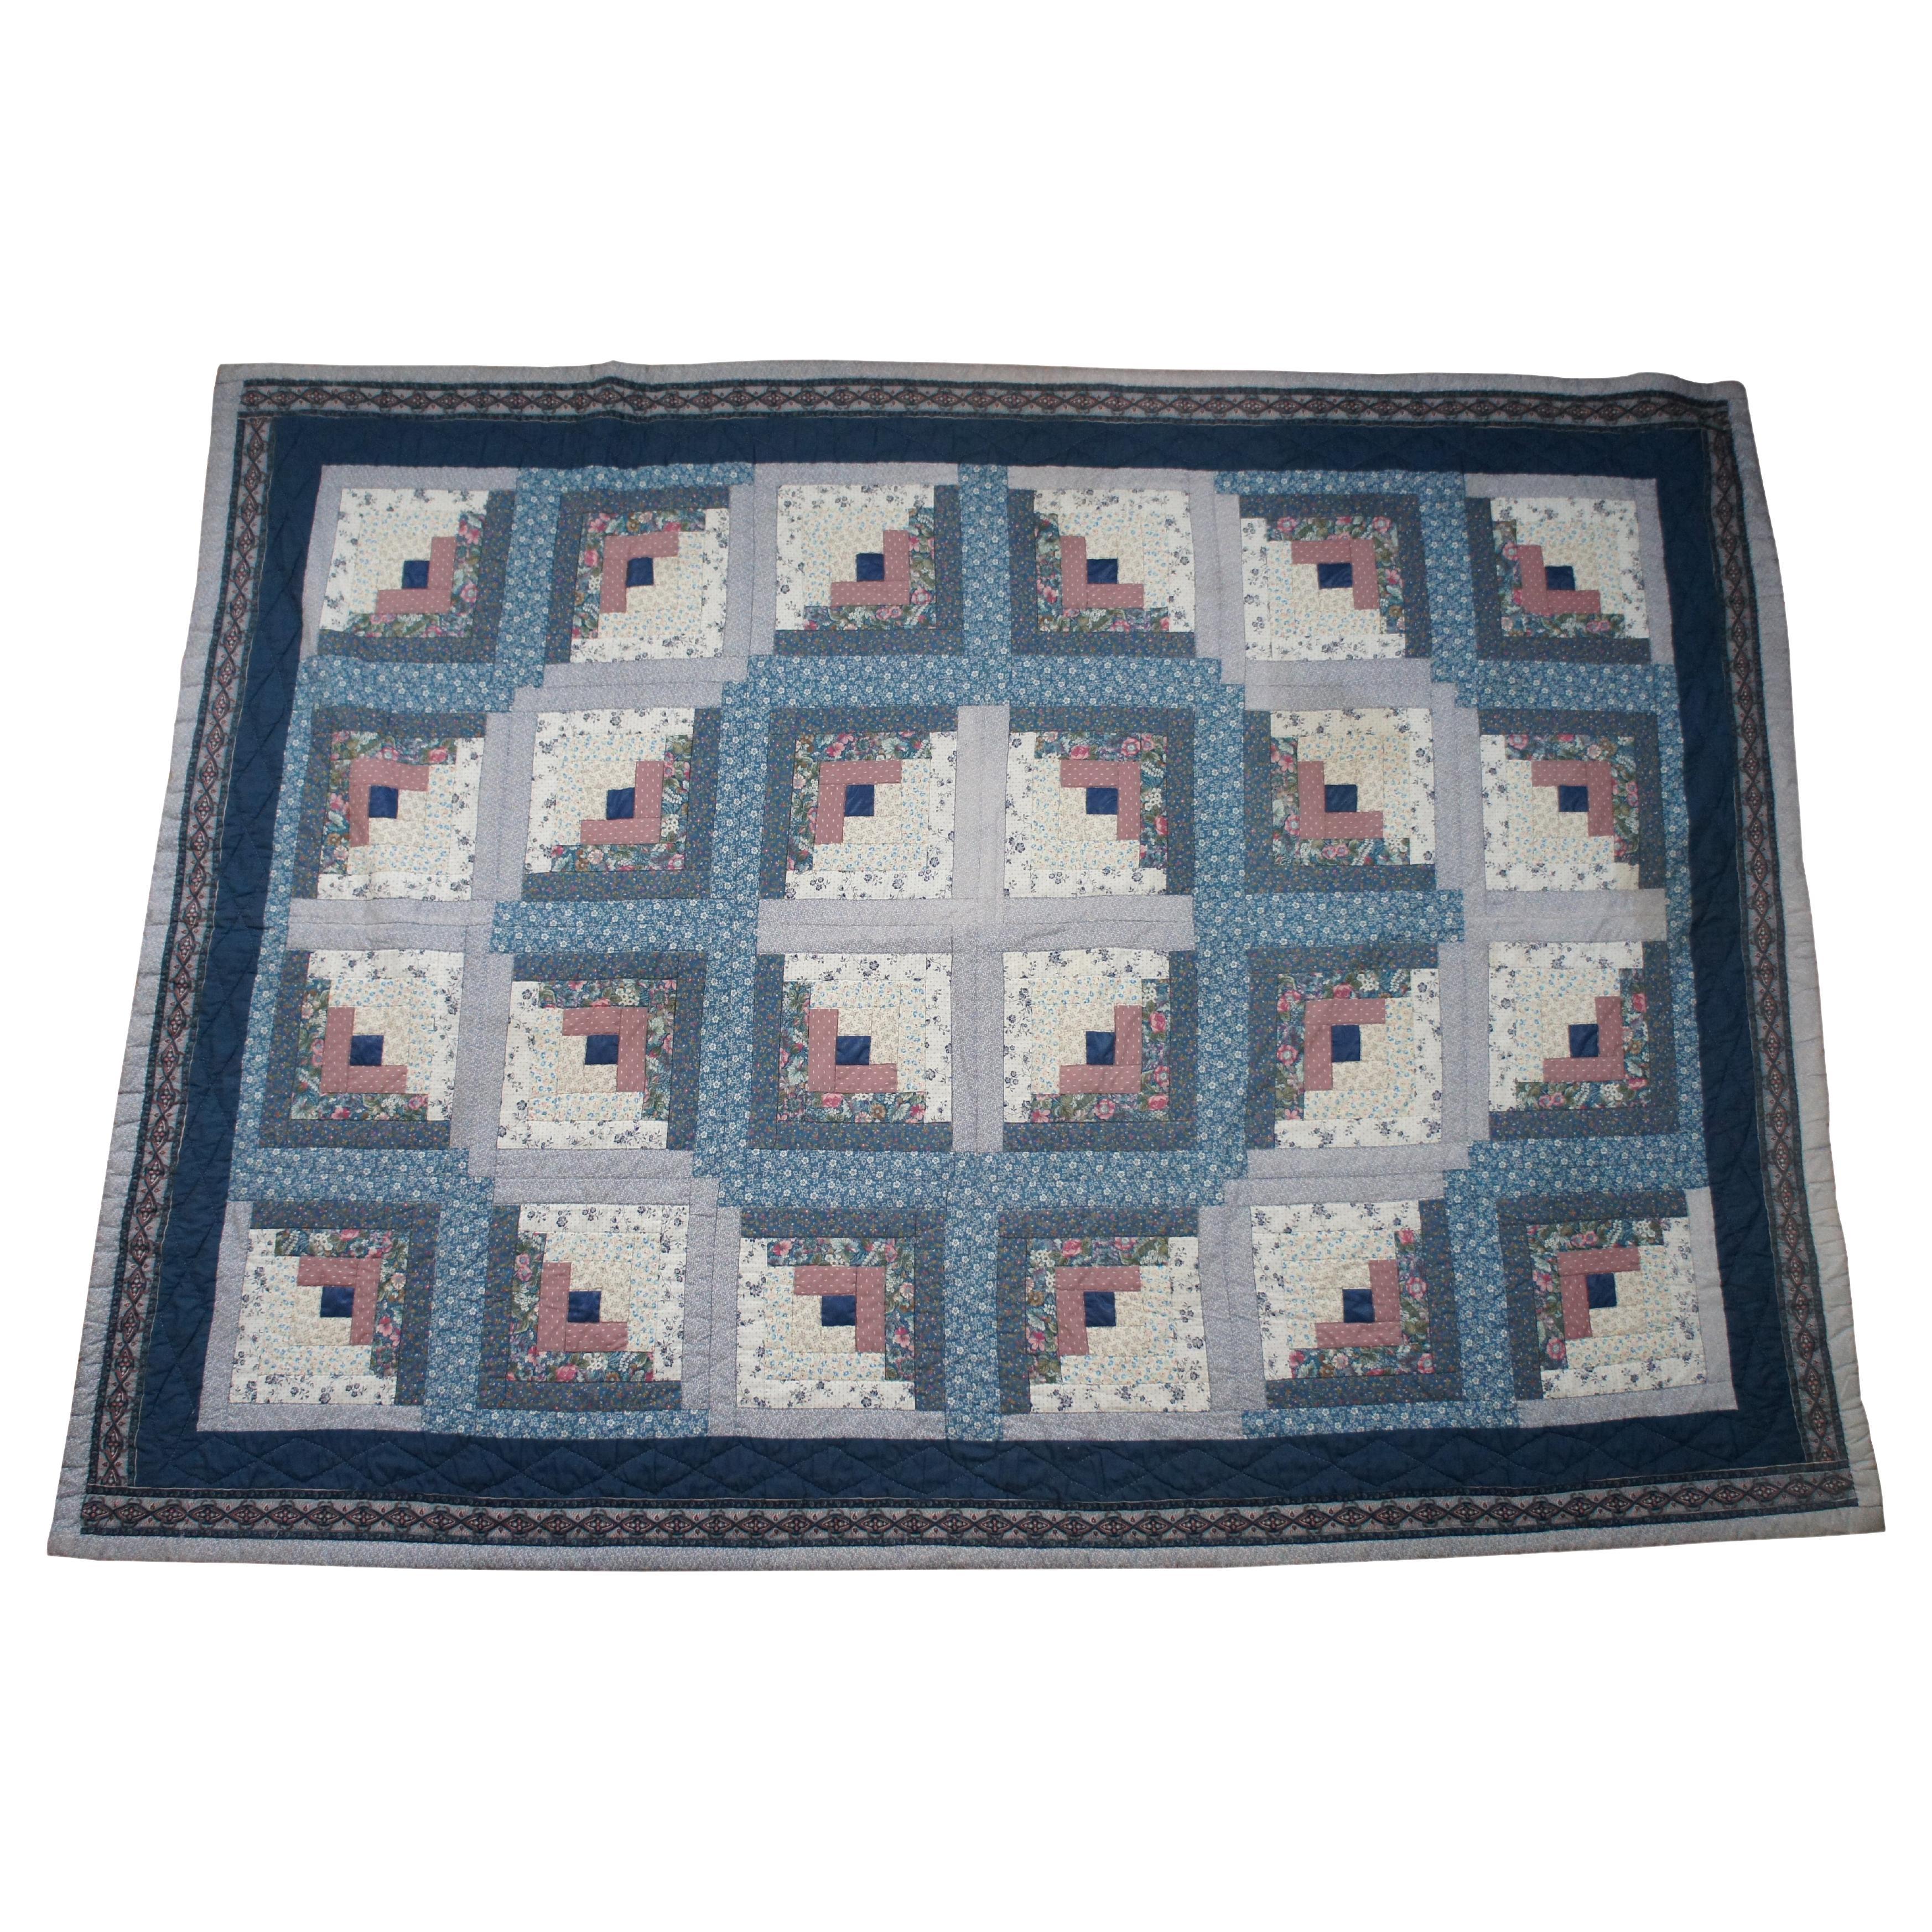 Vintage Log Cabin Stitched Geometric Floral Quilt Blanket Bedspread 94"